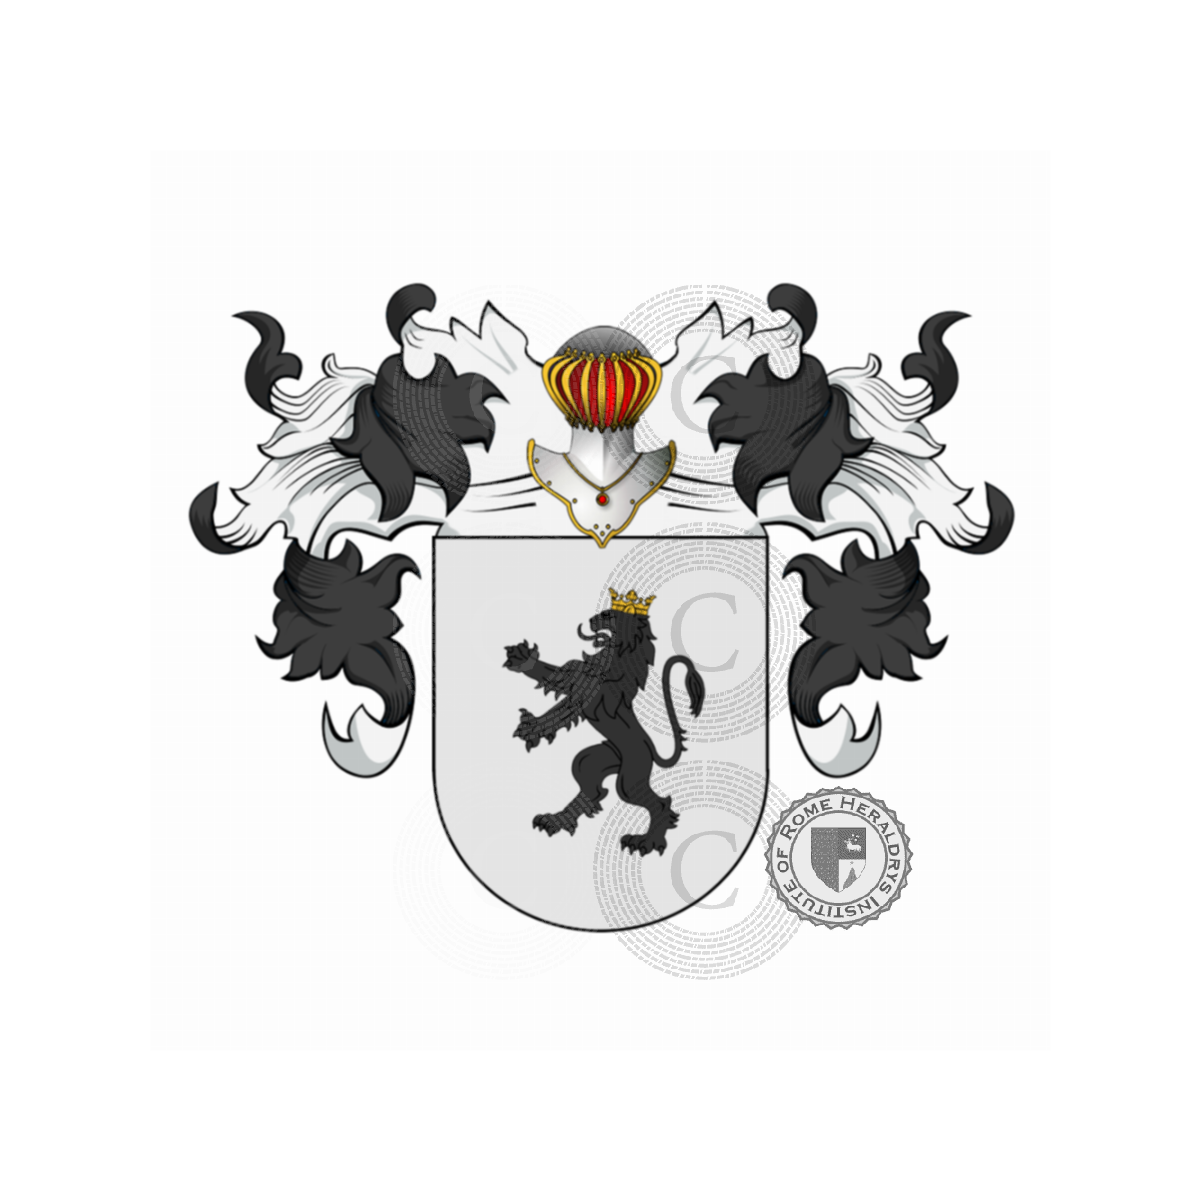 Wappen der FamilieValenzuela